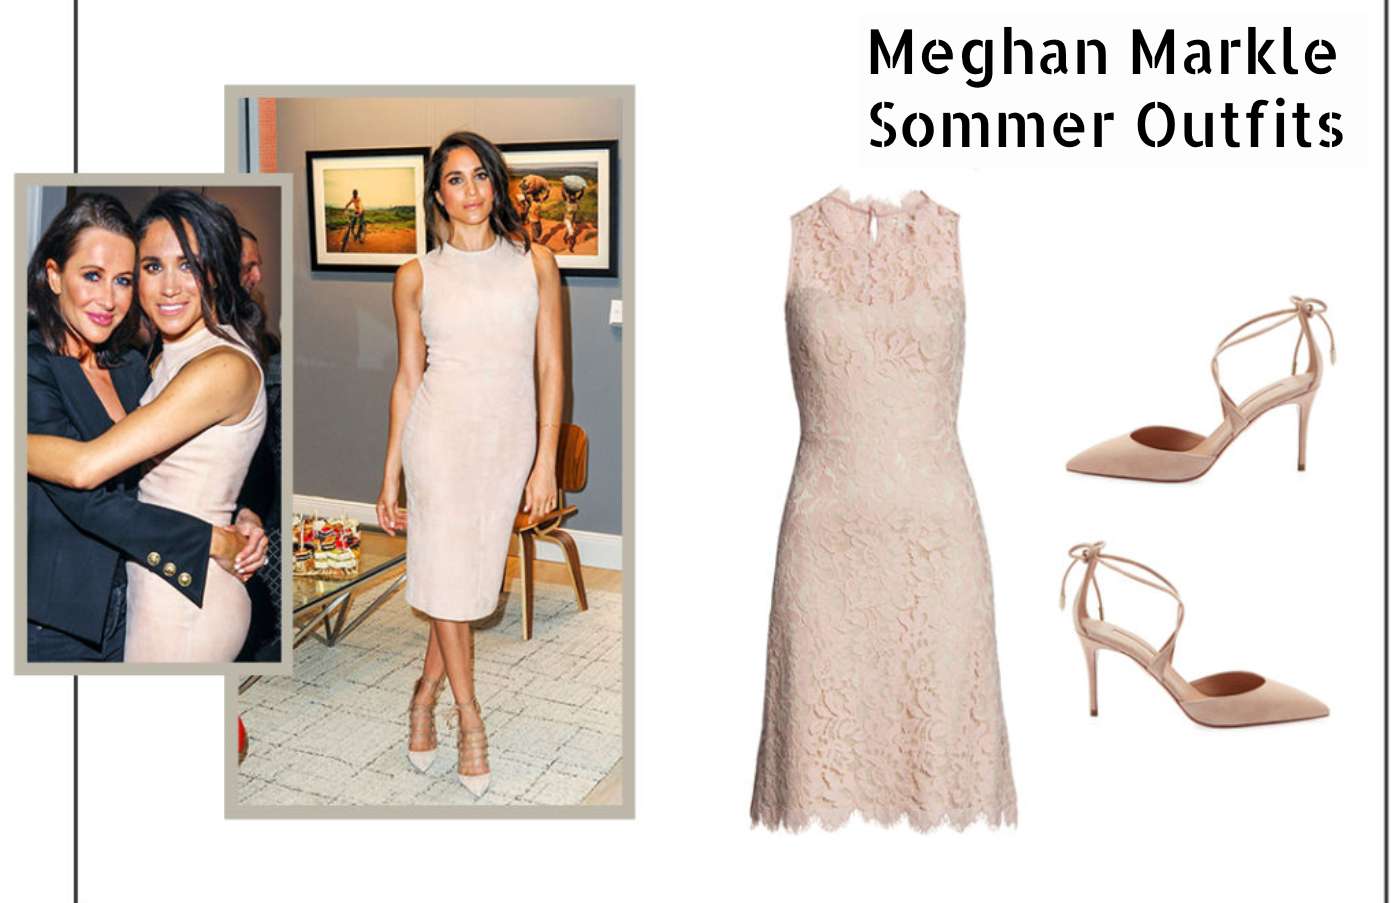 Meghan Markle Summer Outfit Spitze Dress Shoulder-Free Knee-Length Blush